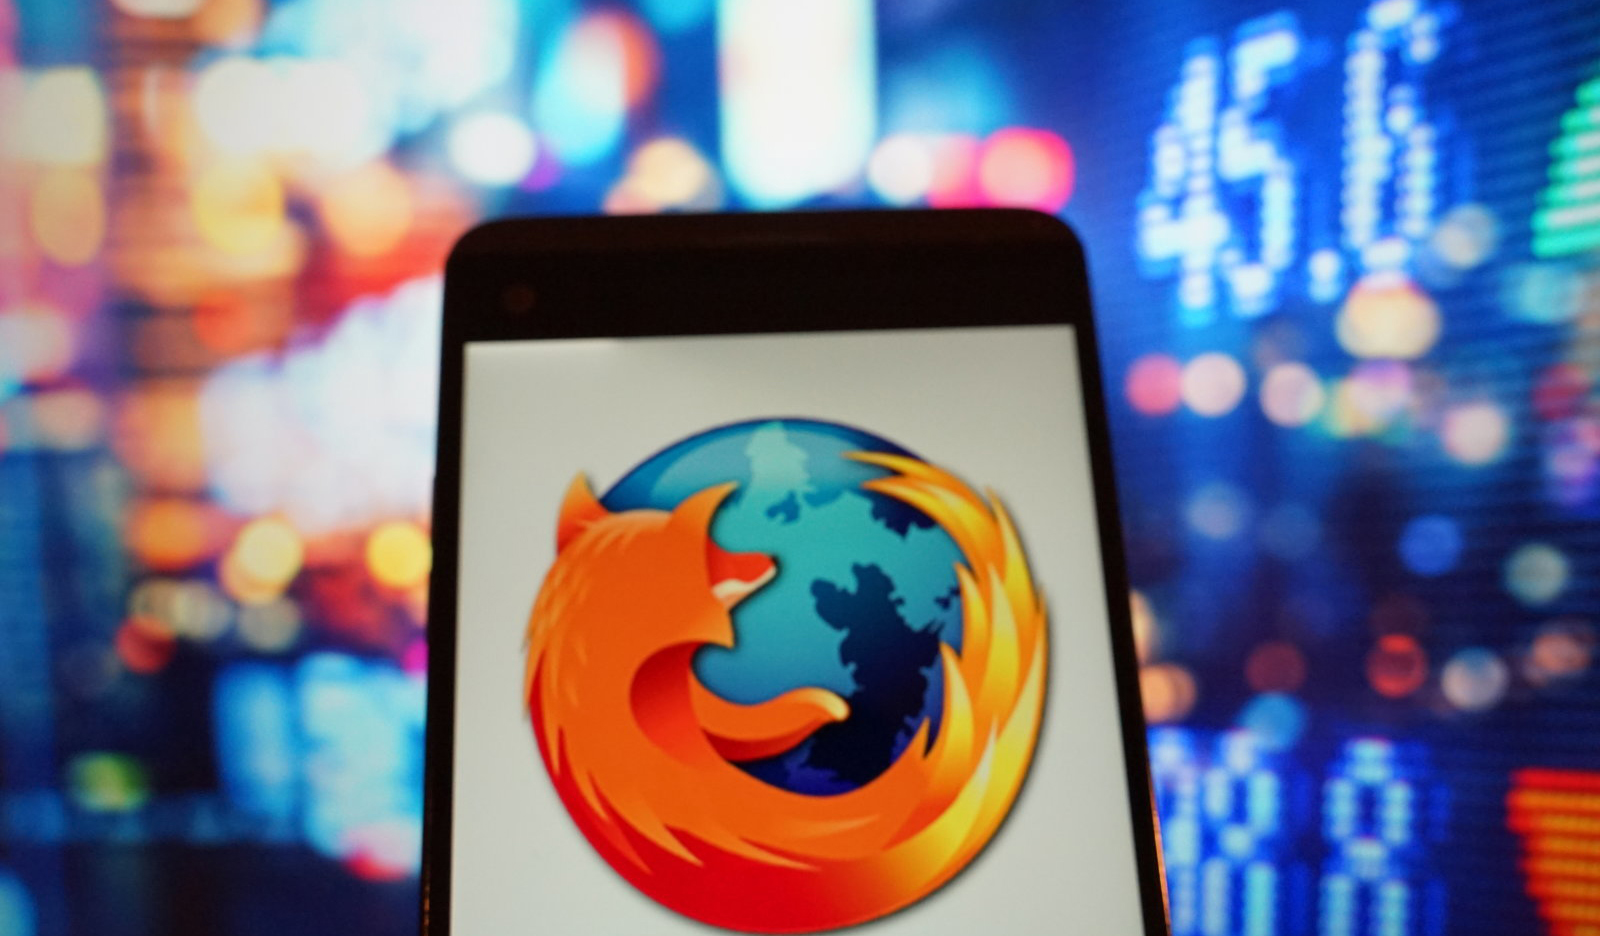 Mozilla хочет сделать Firefox самым быстрым браузером в мире